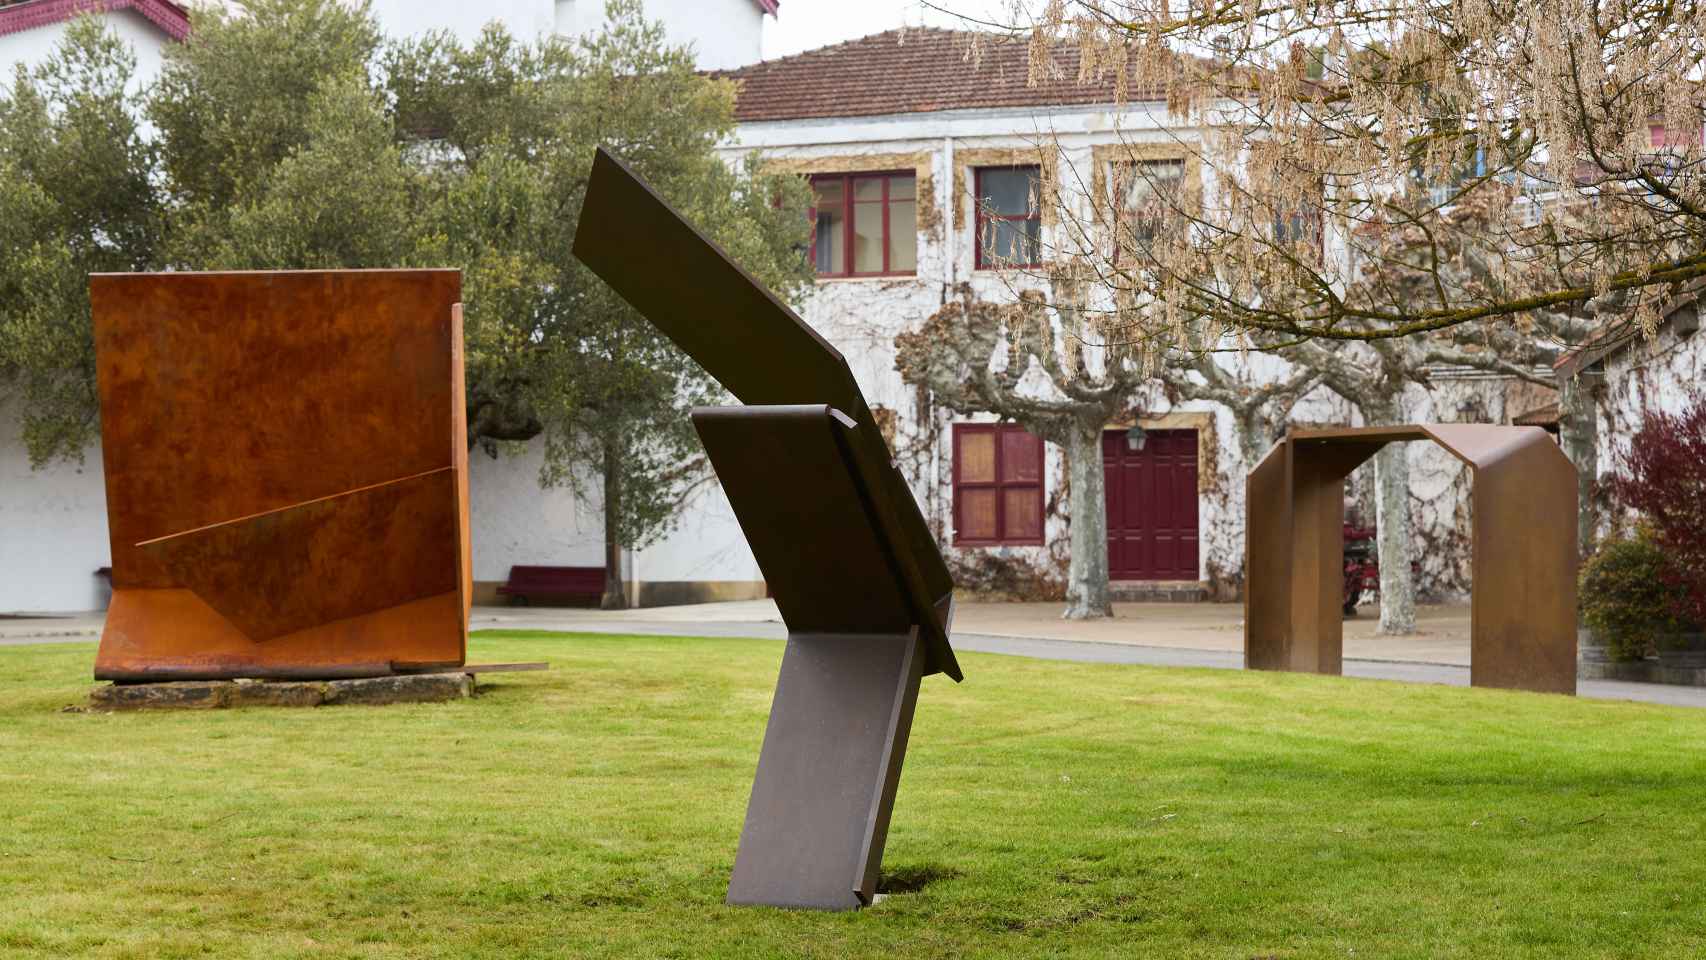 Las esculturas de Pablo Palazuelo también se pueden ver en los jardines de Cvne. Foto: James Sturcke © Fundación Pablo Palazuelo